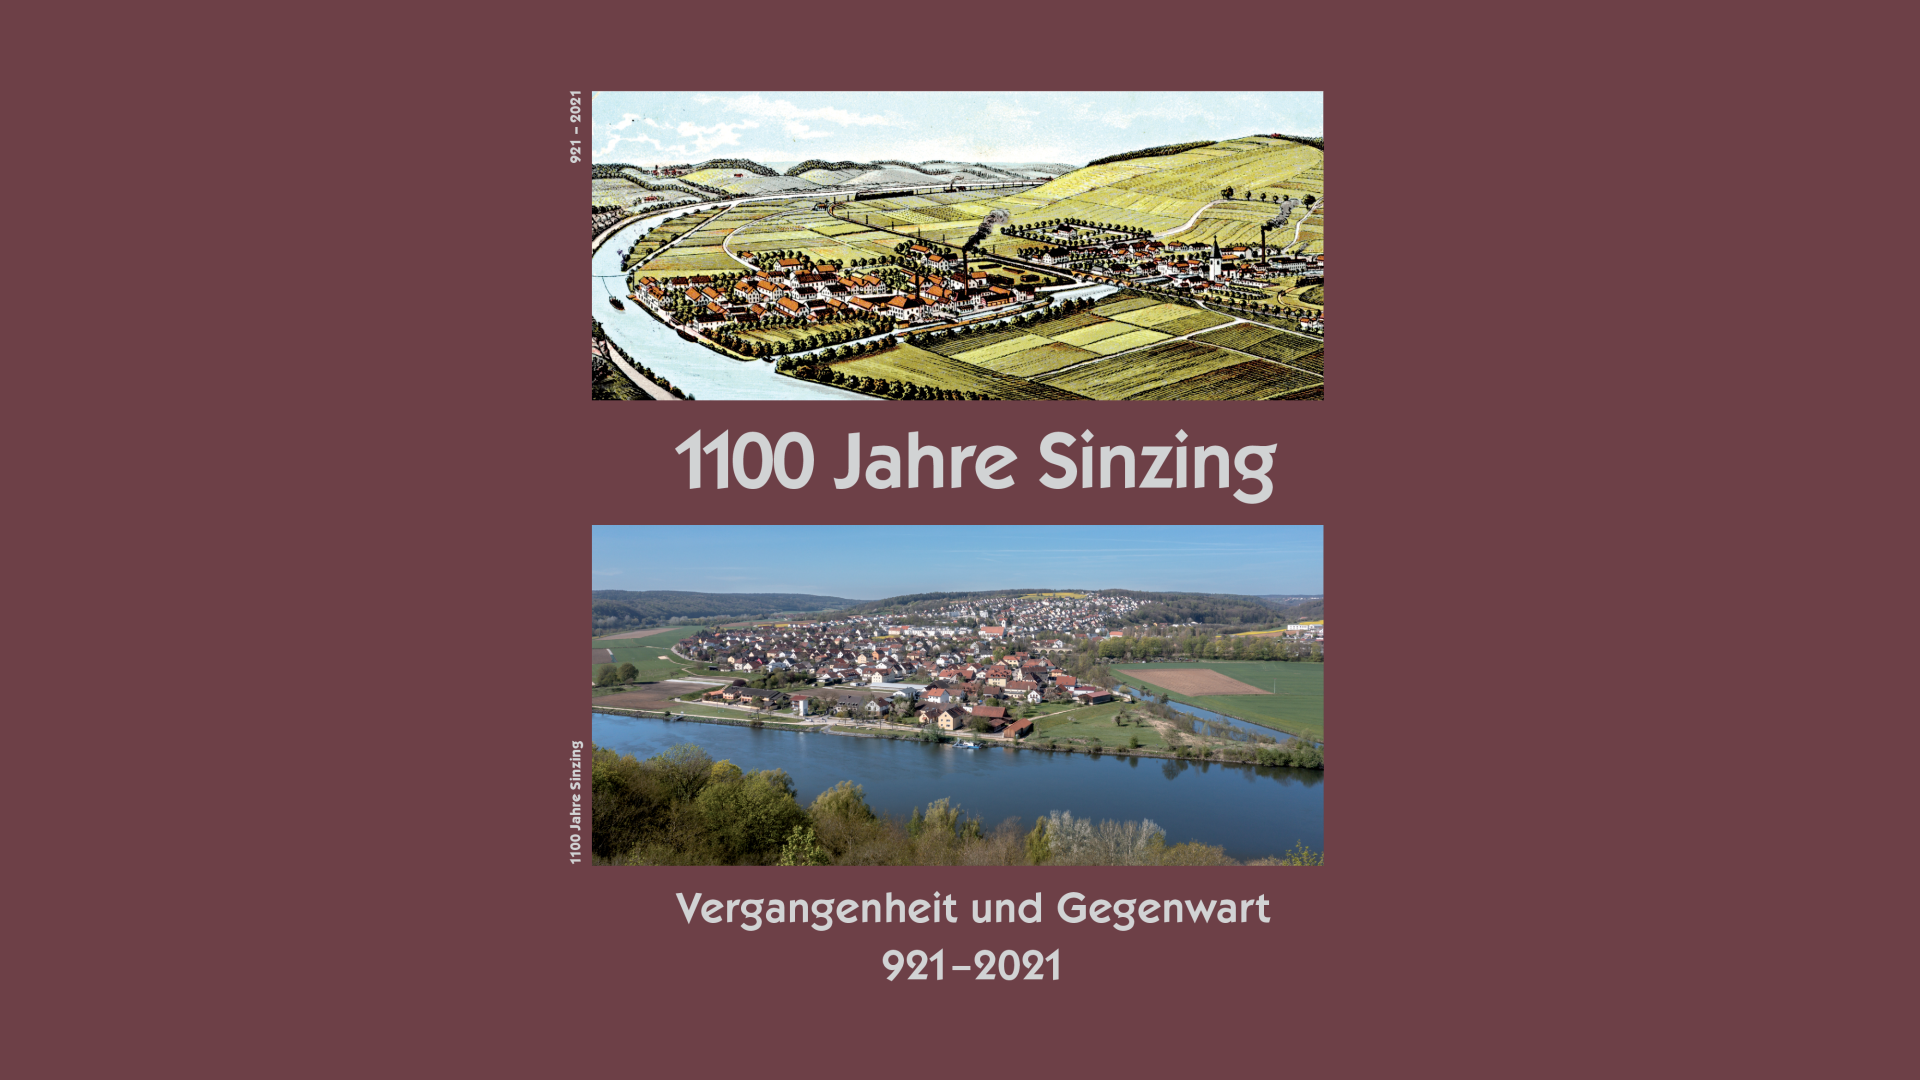 Jubiläumschronik 1100 Jahre Sinzing – Vergangenheit und Gegenwart